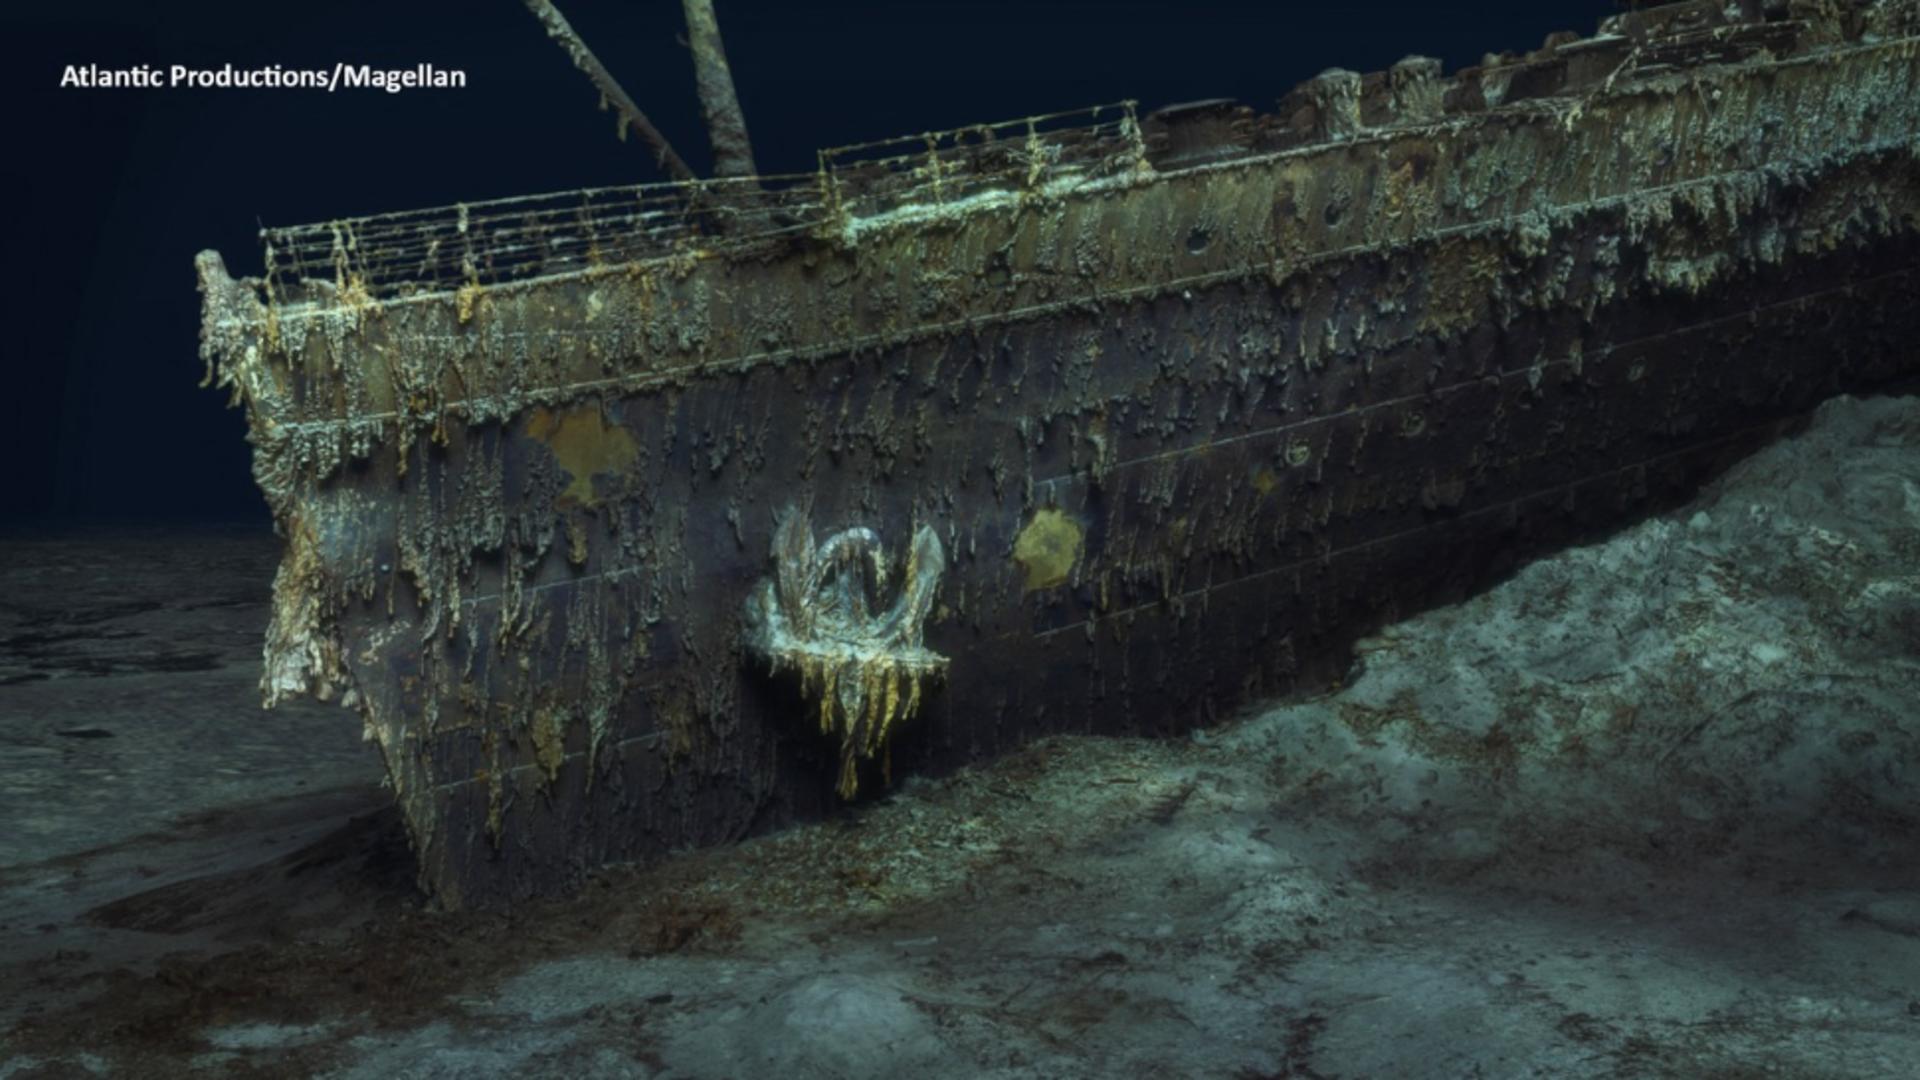 Meniul de pe vasul Titanic, servit cu 3 zile înainte de tragedie, scos la licitație – Cu cât a fost vândut